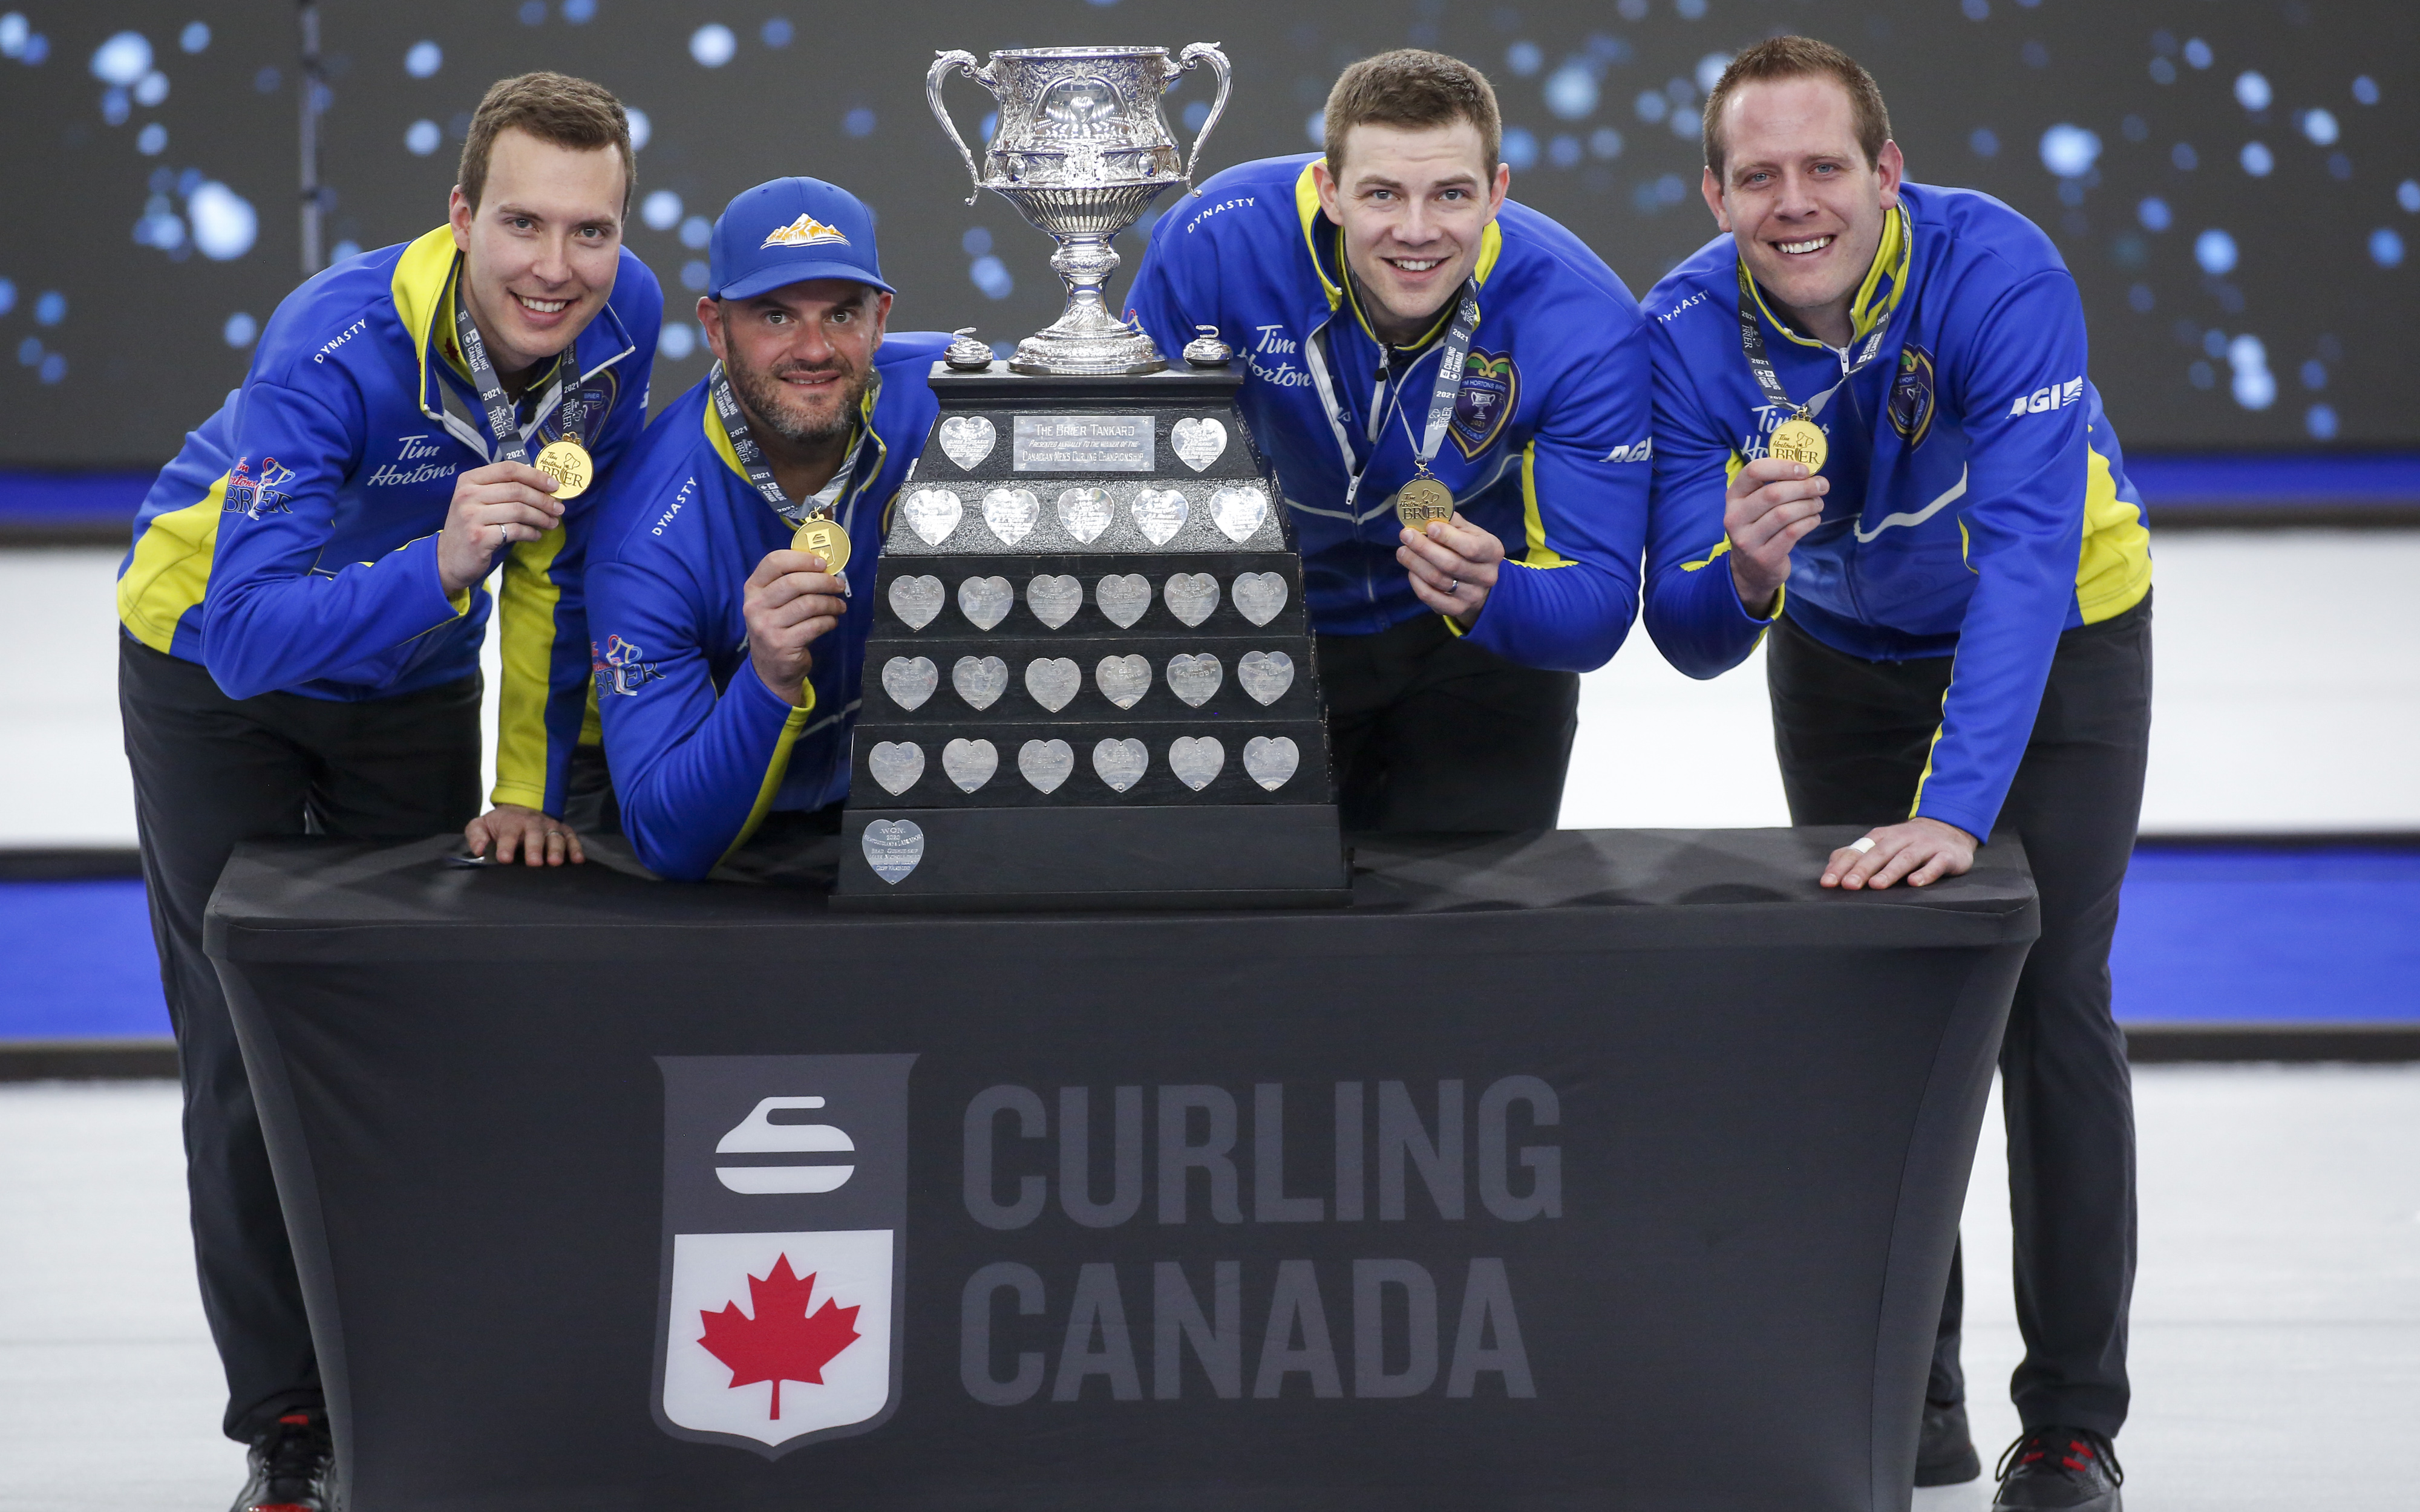  L'équipe de l'Alberta, de gauche à droite, le capitaine Brendan Bottcher, le troisième Darren Moulding, le deuxième Brad Thiessen et le premier Karrick Martin célèbrent leur victoire en battant l'équipe Wild Card Deux pour remporter la finale du Brier de curling à Calgary, en Alberta., dimanche 14 mars 2021.